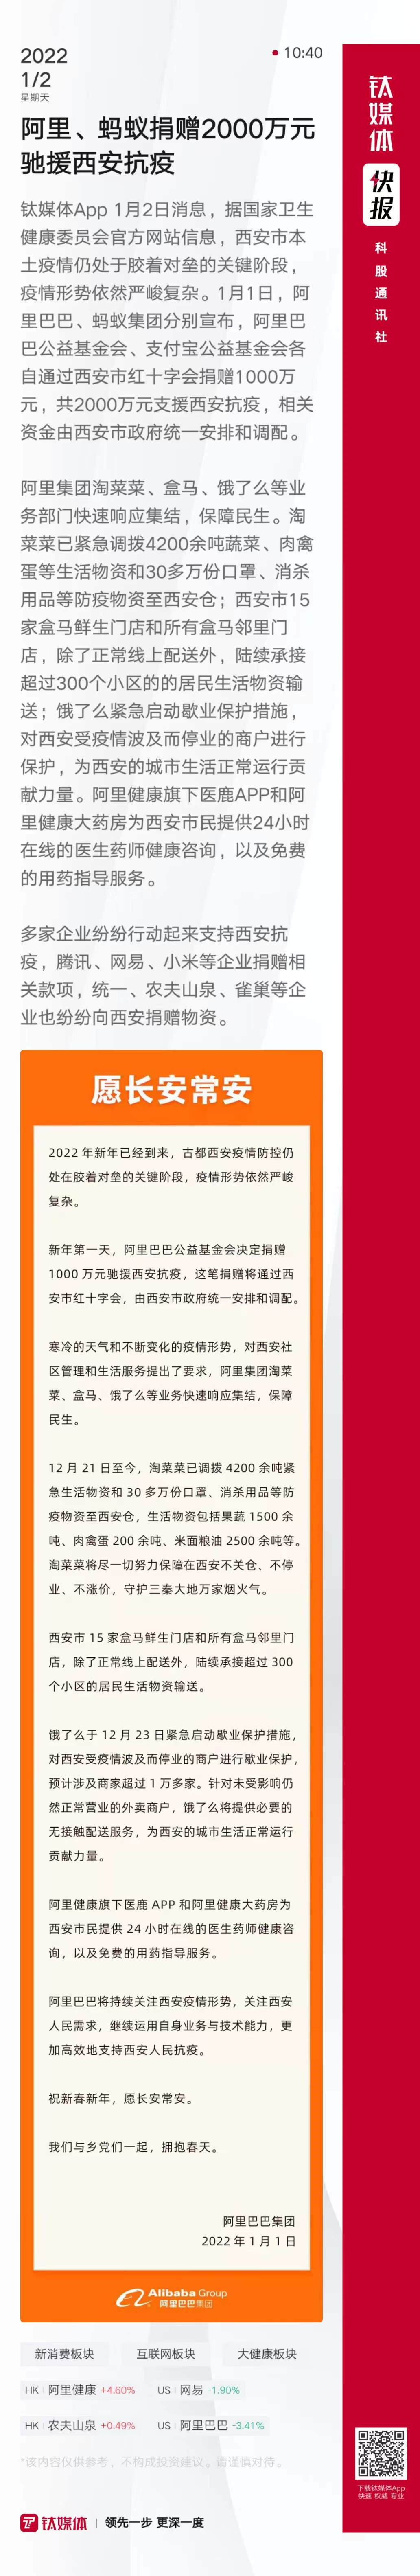 张庭林瑞阳微博均被禁言；恒大海花岛39栋楼被责令拆除丨科股快报